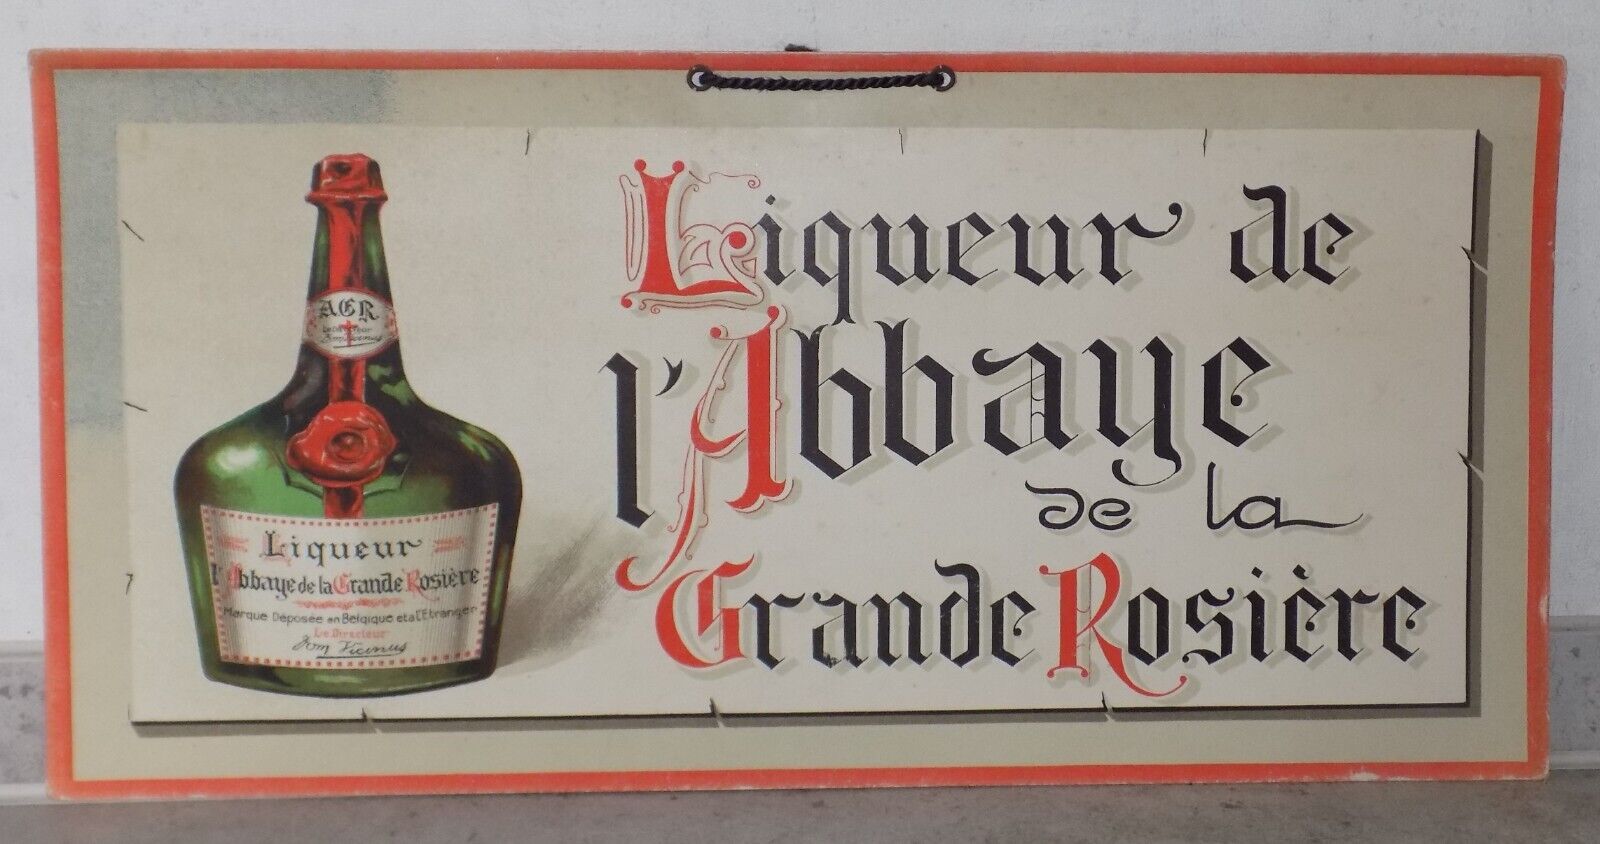 ANTIQUE PLV BISTRO LIQUEUR DE LIQUEUR DE LIQUEUR LARGE ROSE WALL ADVERTISING CARDBOARD